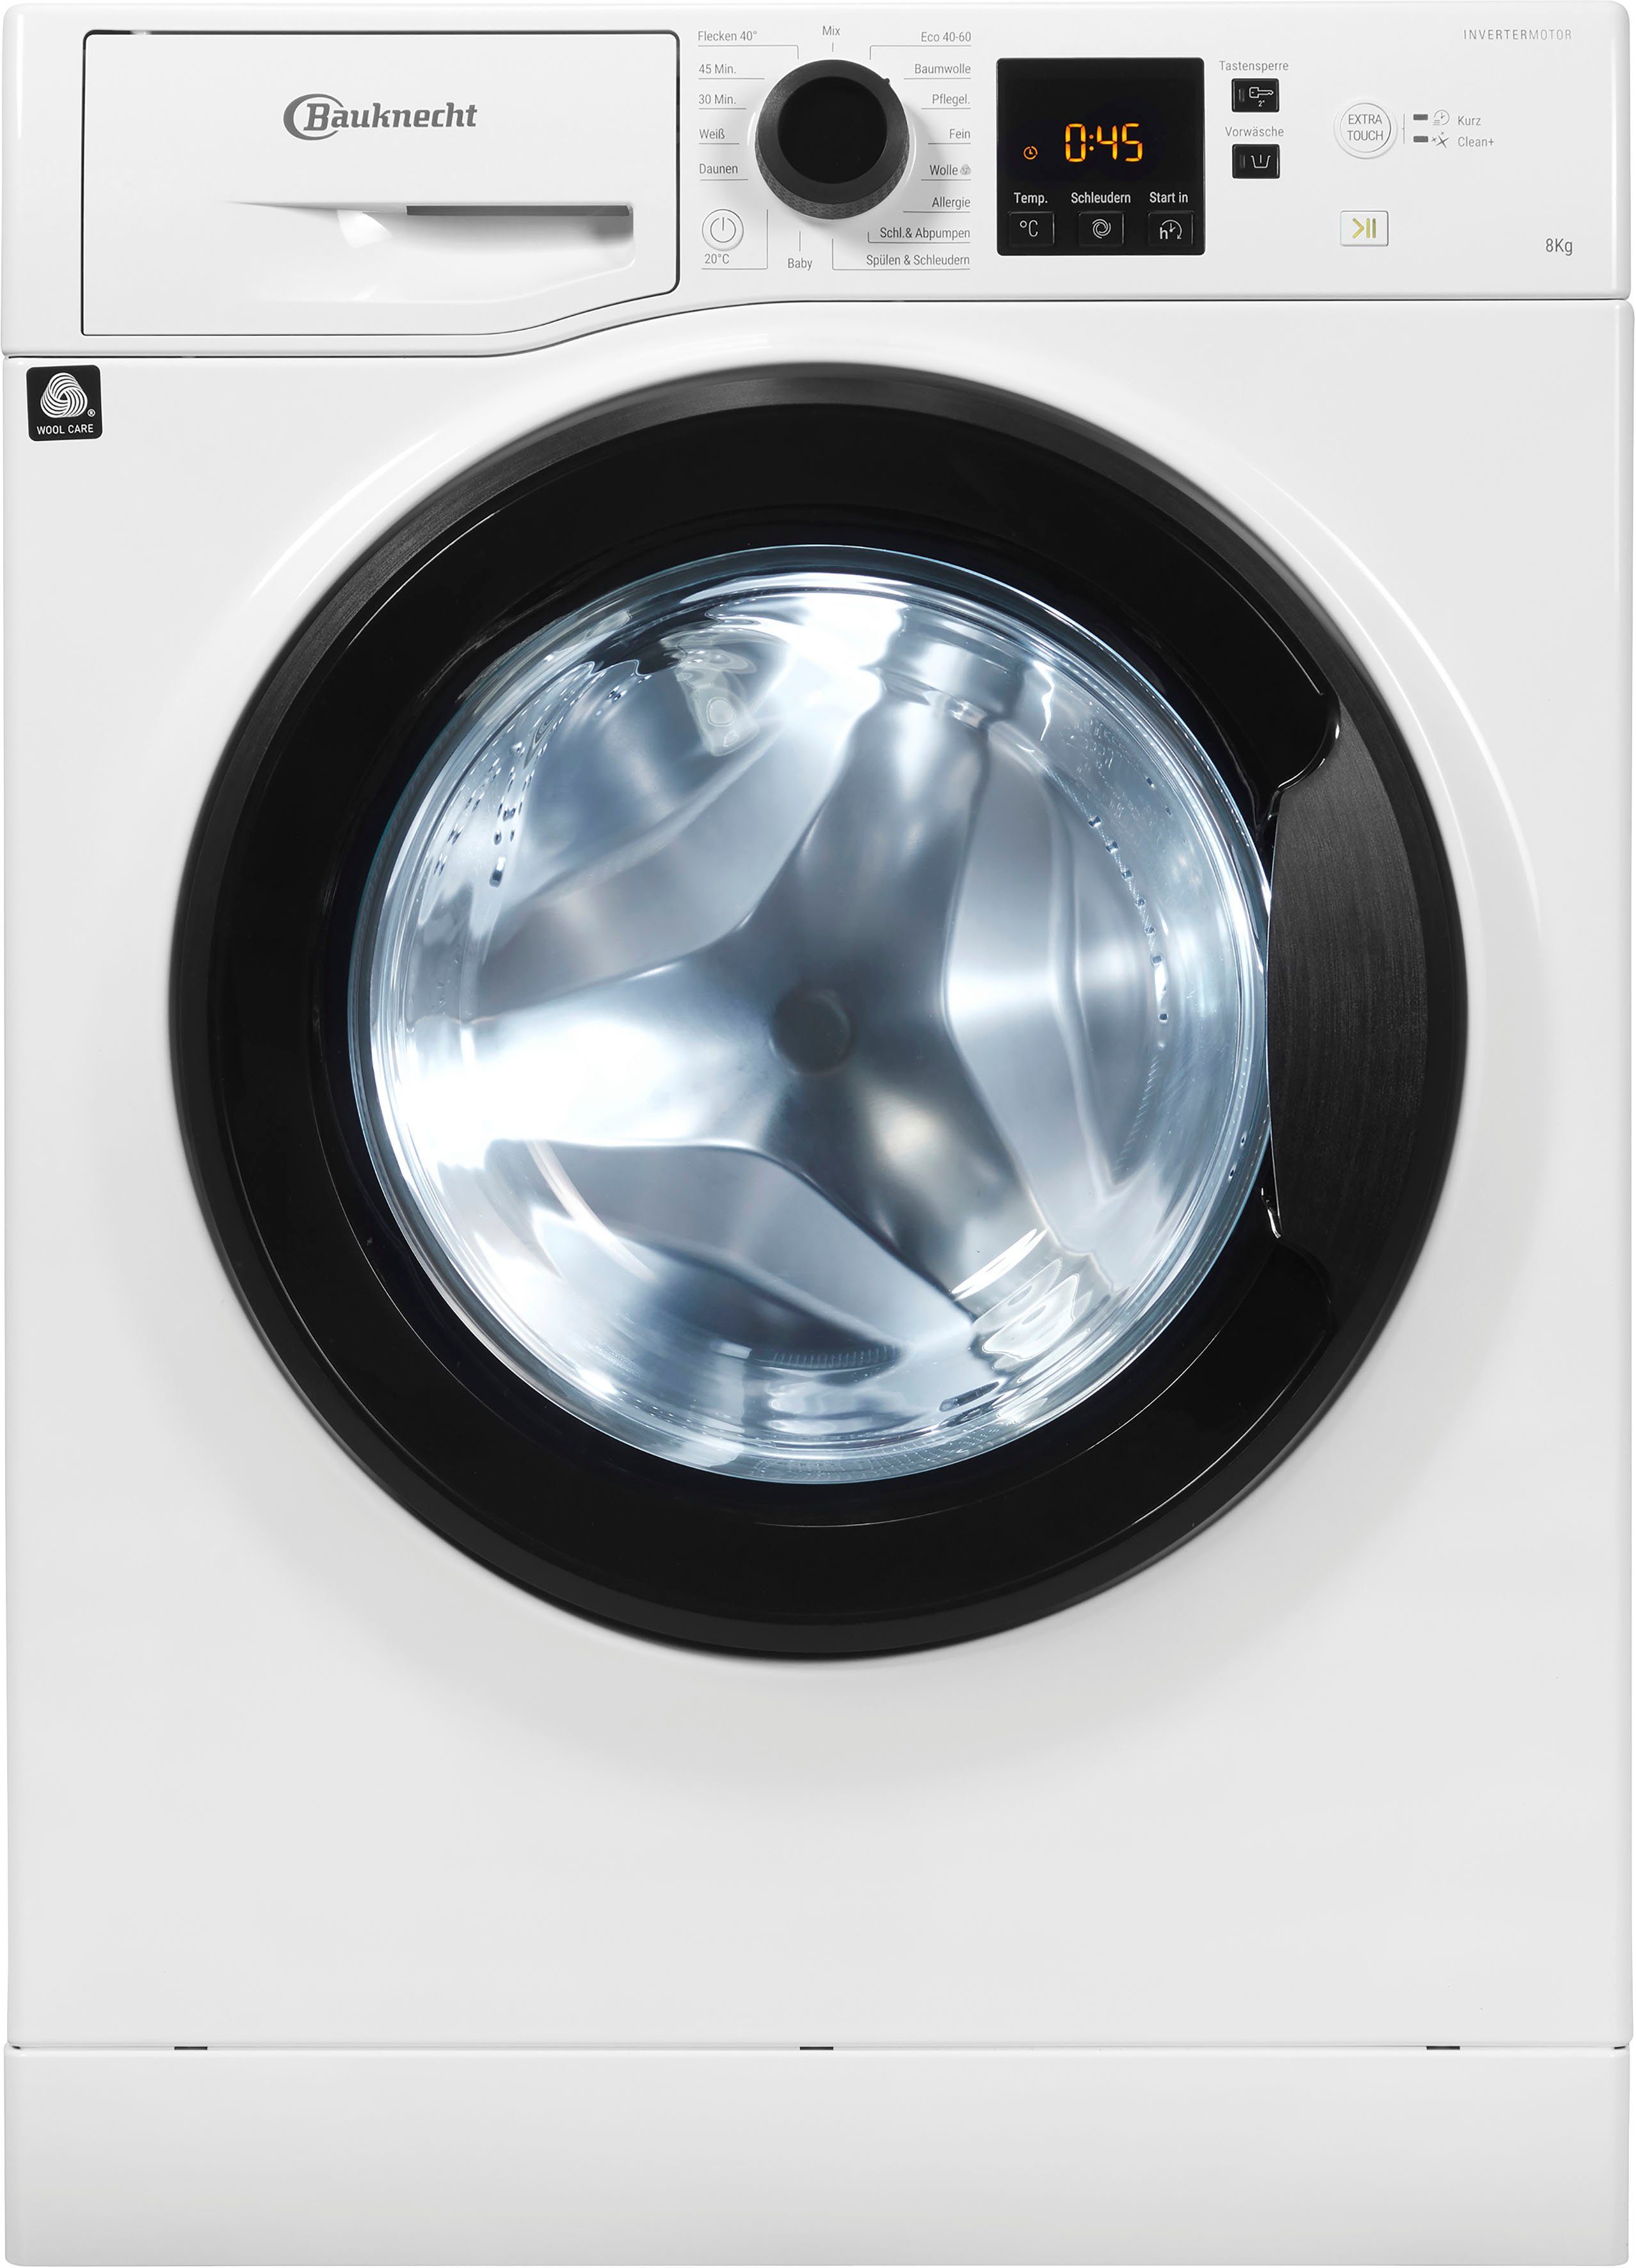 BAUKNECHT Waschmaschine Super U/min, 1400 A, 8 845 kg, Jahre Eco Herstellergarantie 4